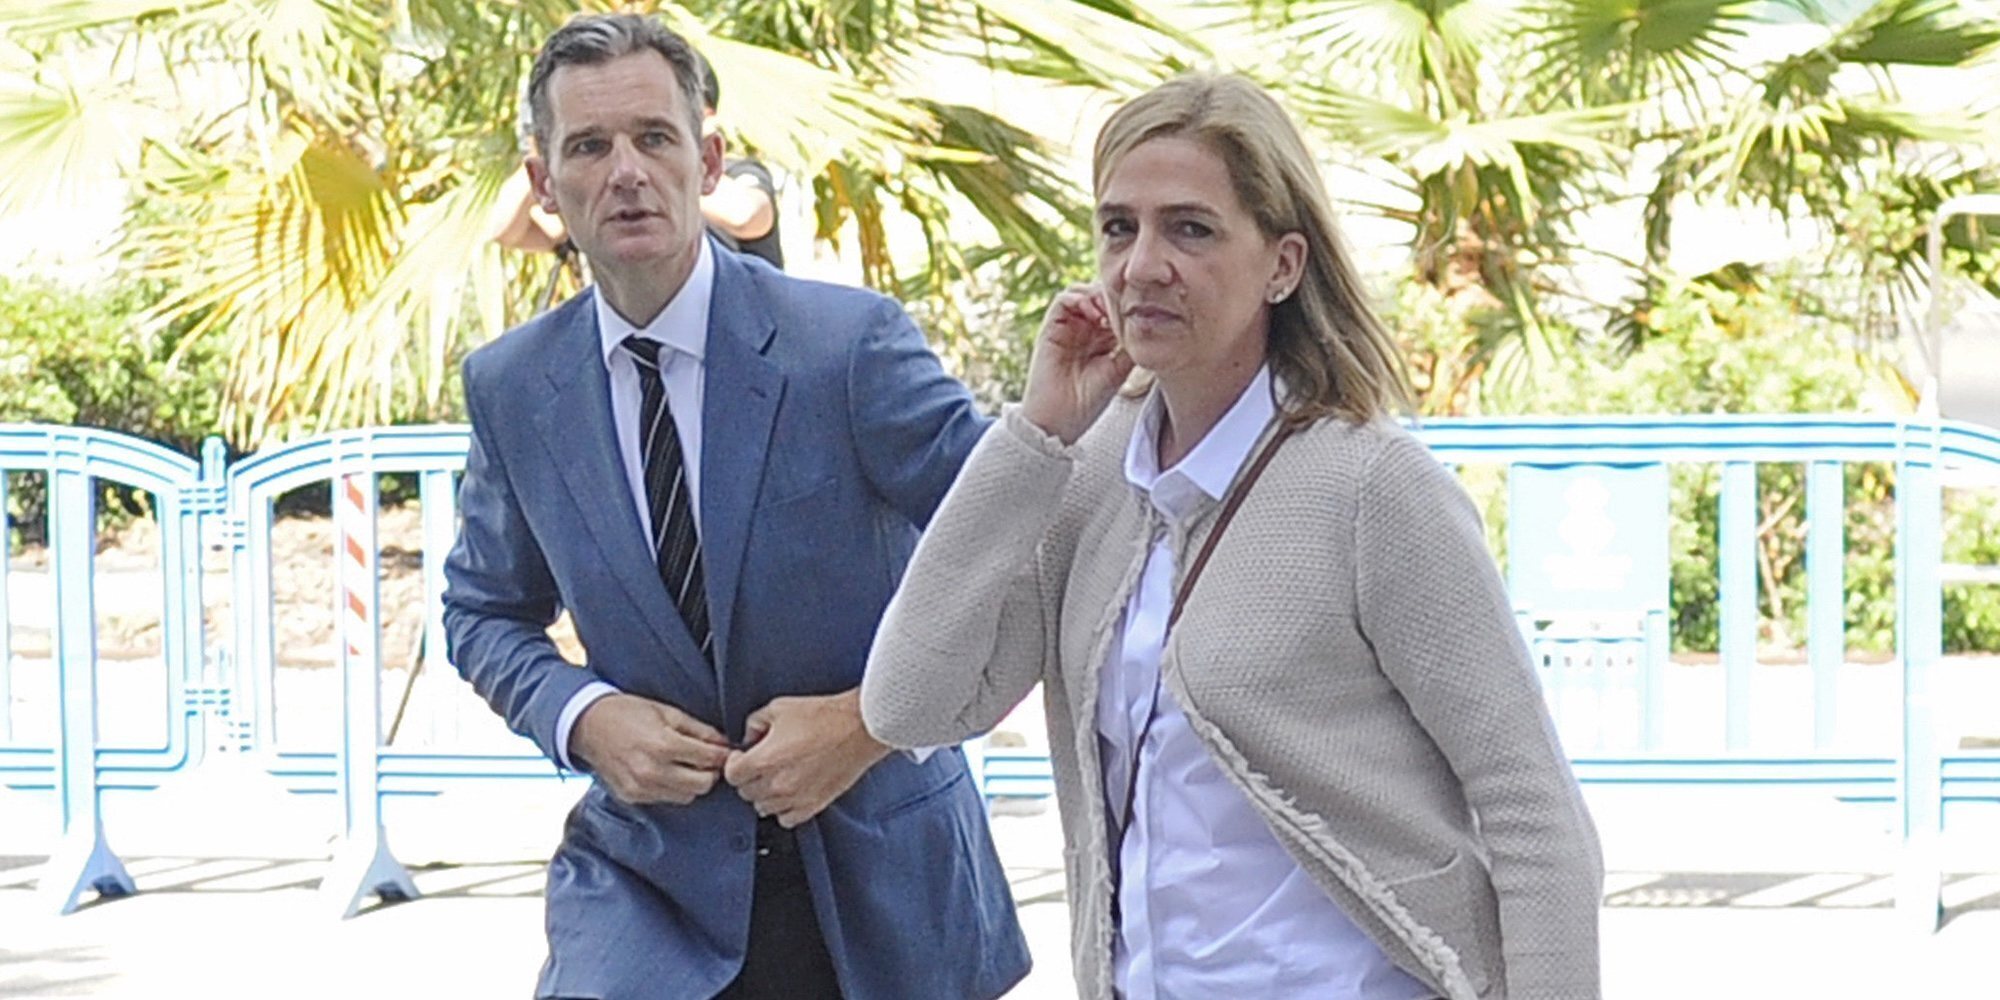 La Infanta Cristina e Iñaki Urdangarin: errores, una pensión y mucho en lo que pensar